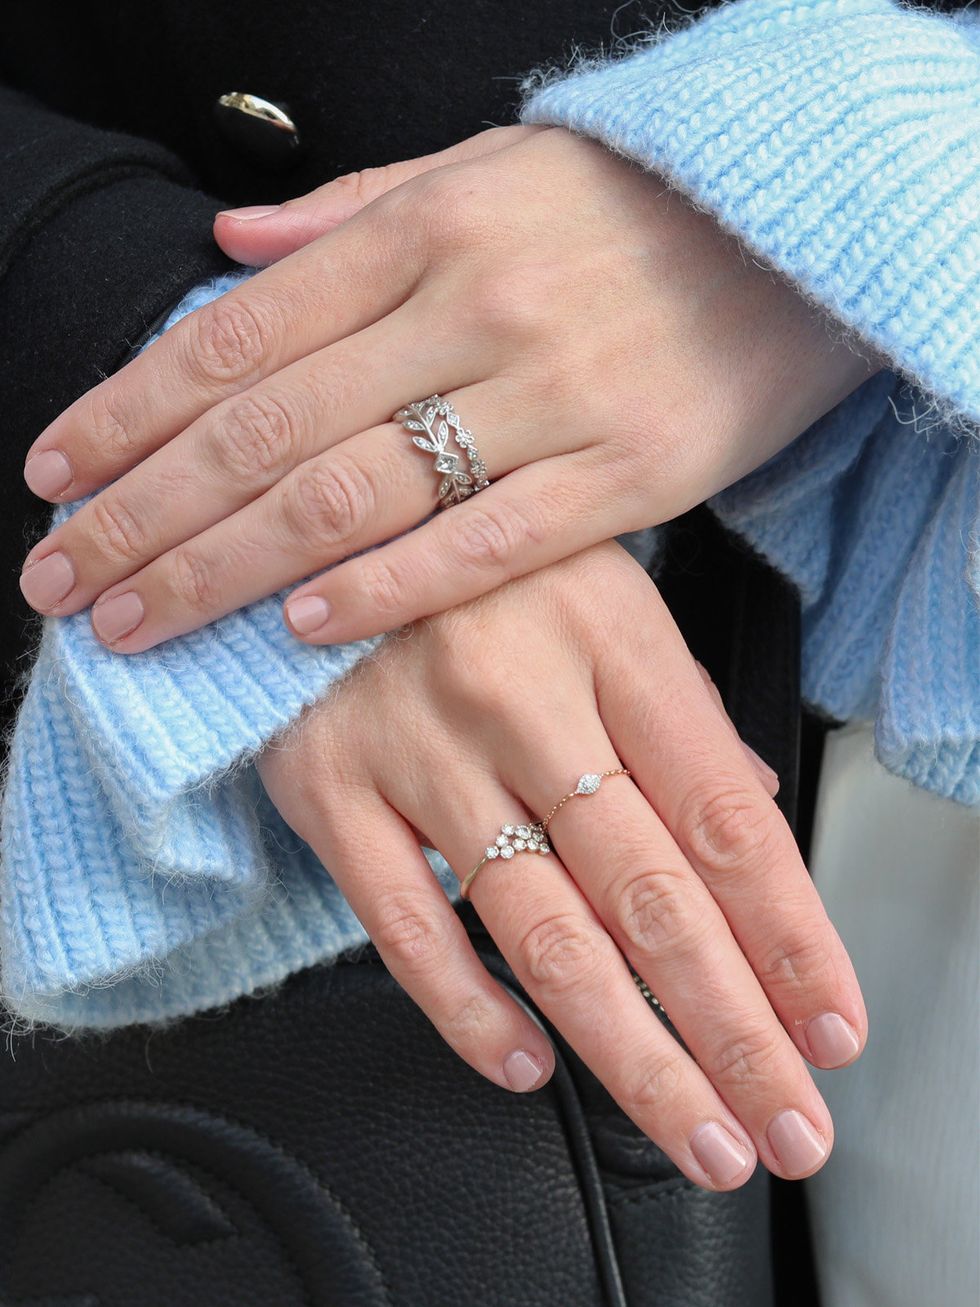 Nail, Finger, Manicure, Nail care, Ring, Hand, Wedding ring, Cosmetics, Nail polish, Engagement ring, 